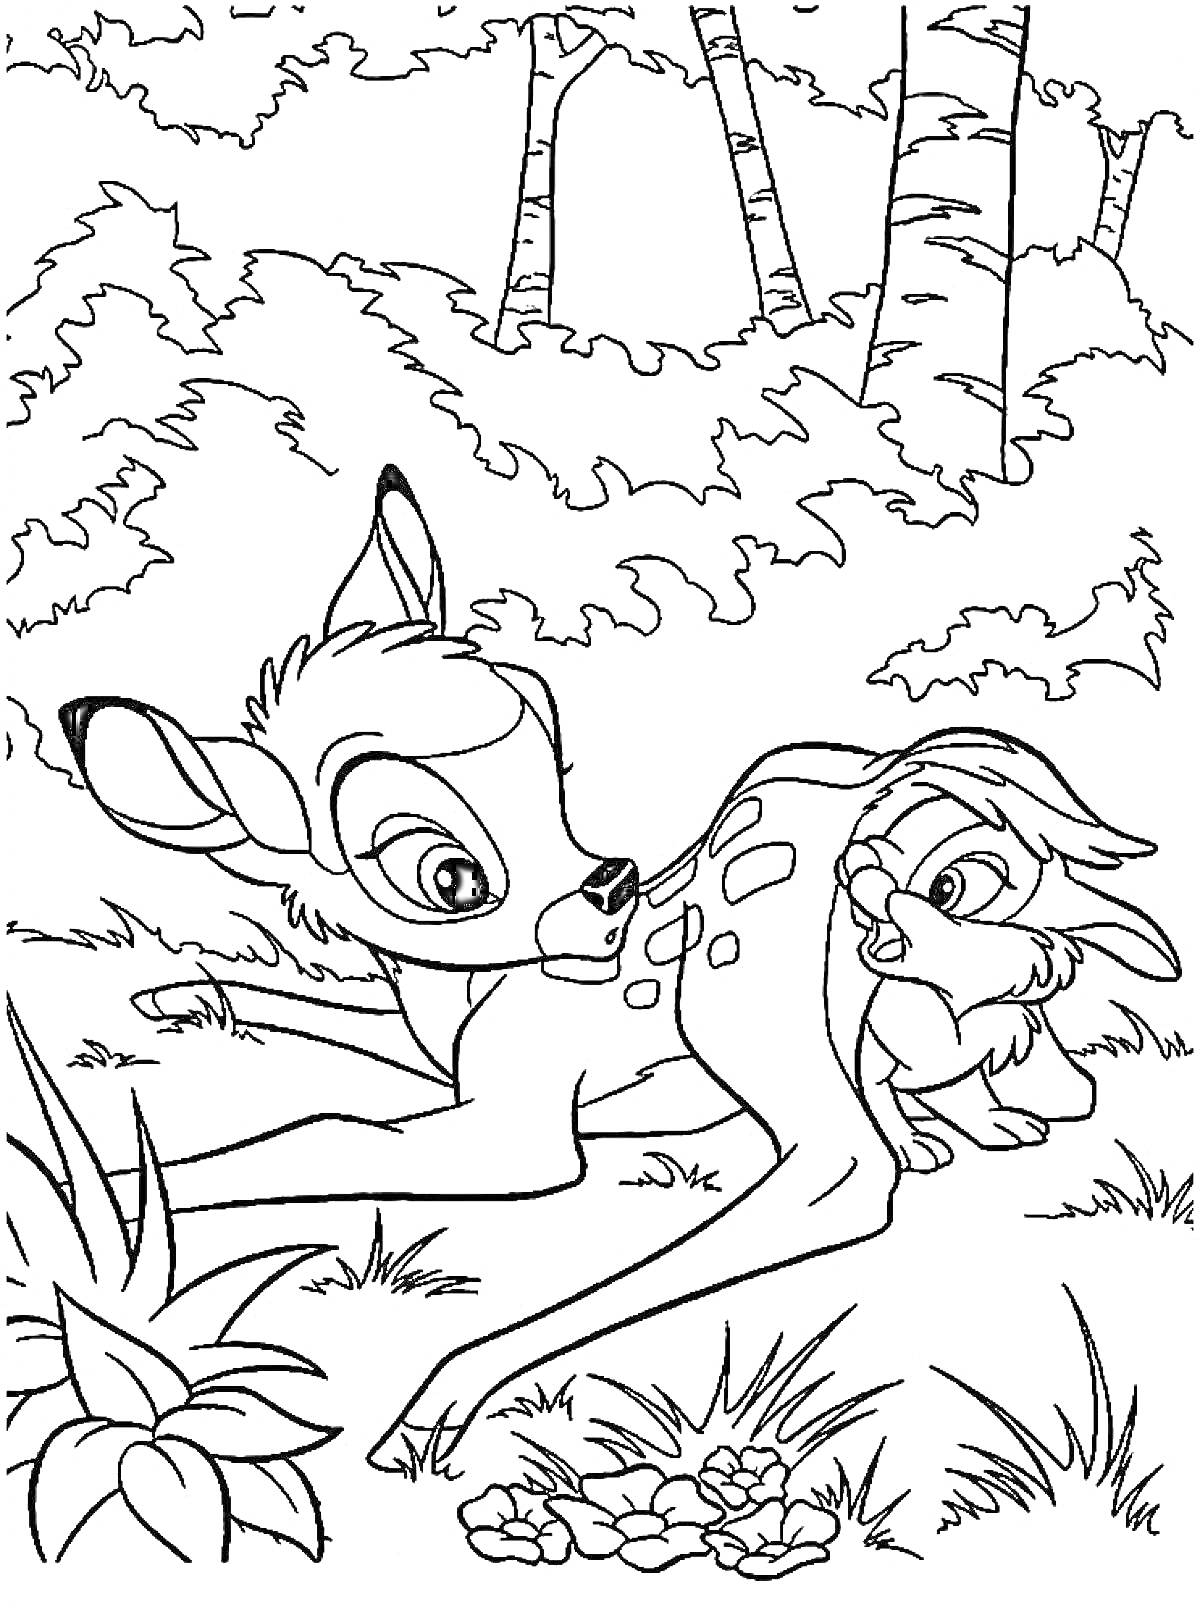 Бэмби и кролик на лесной поляне с растениями и деревьями на заднем плане